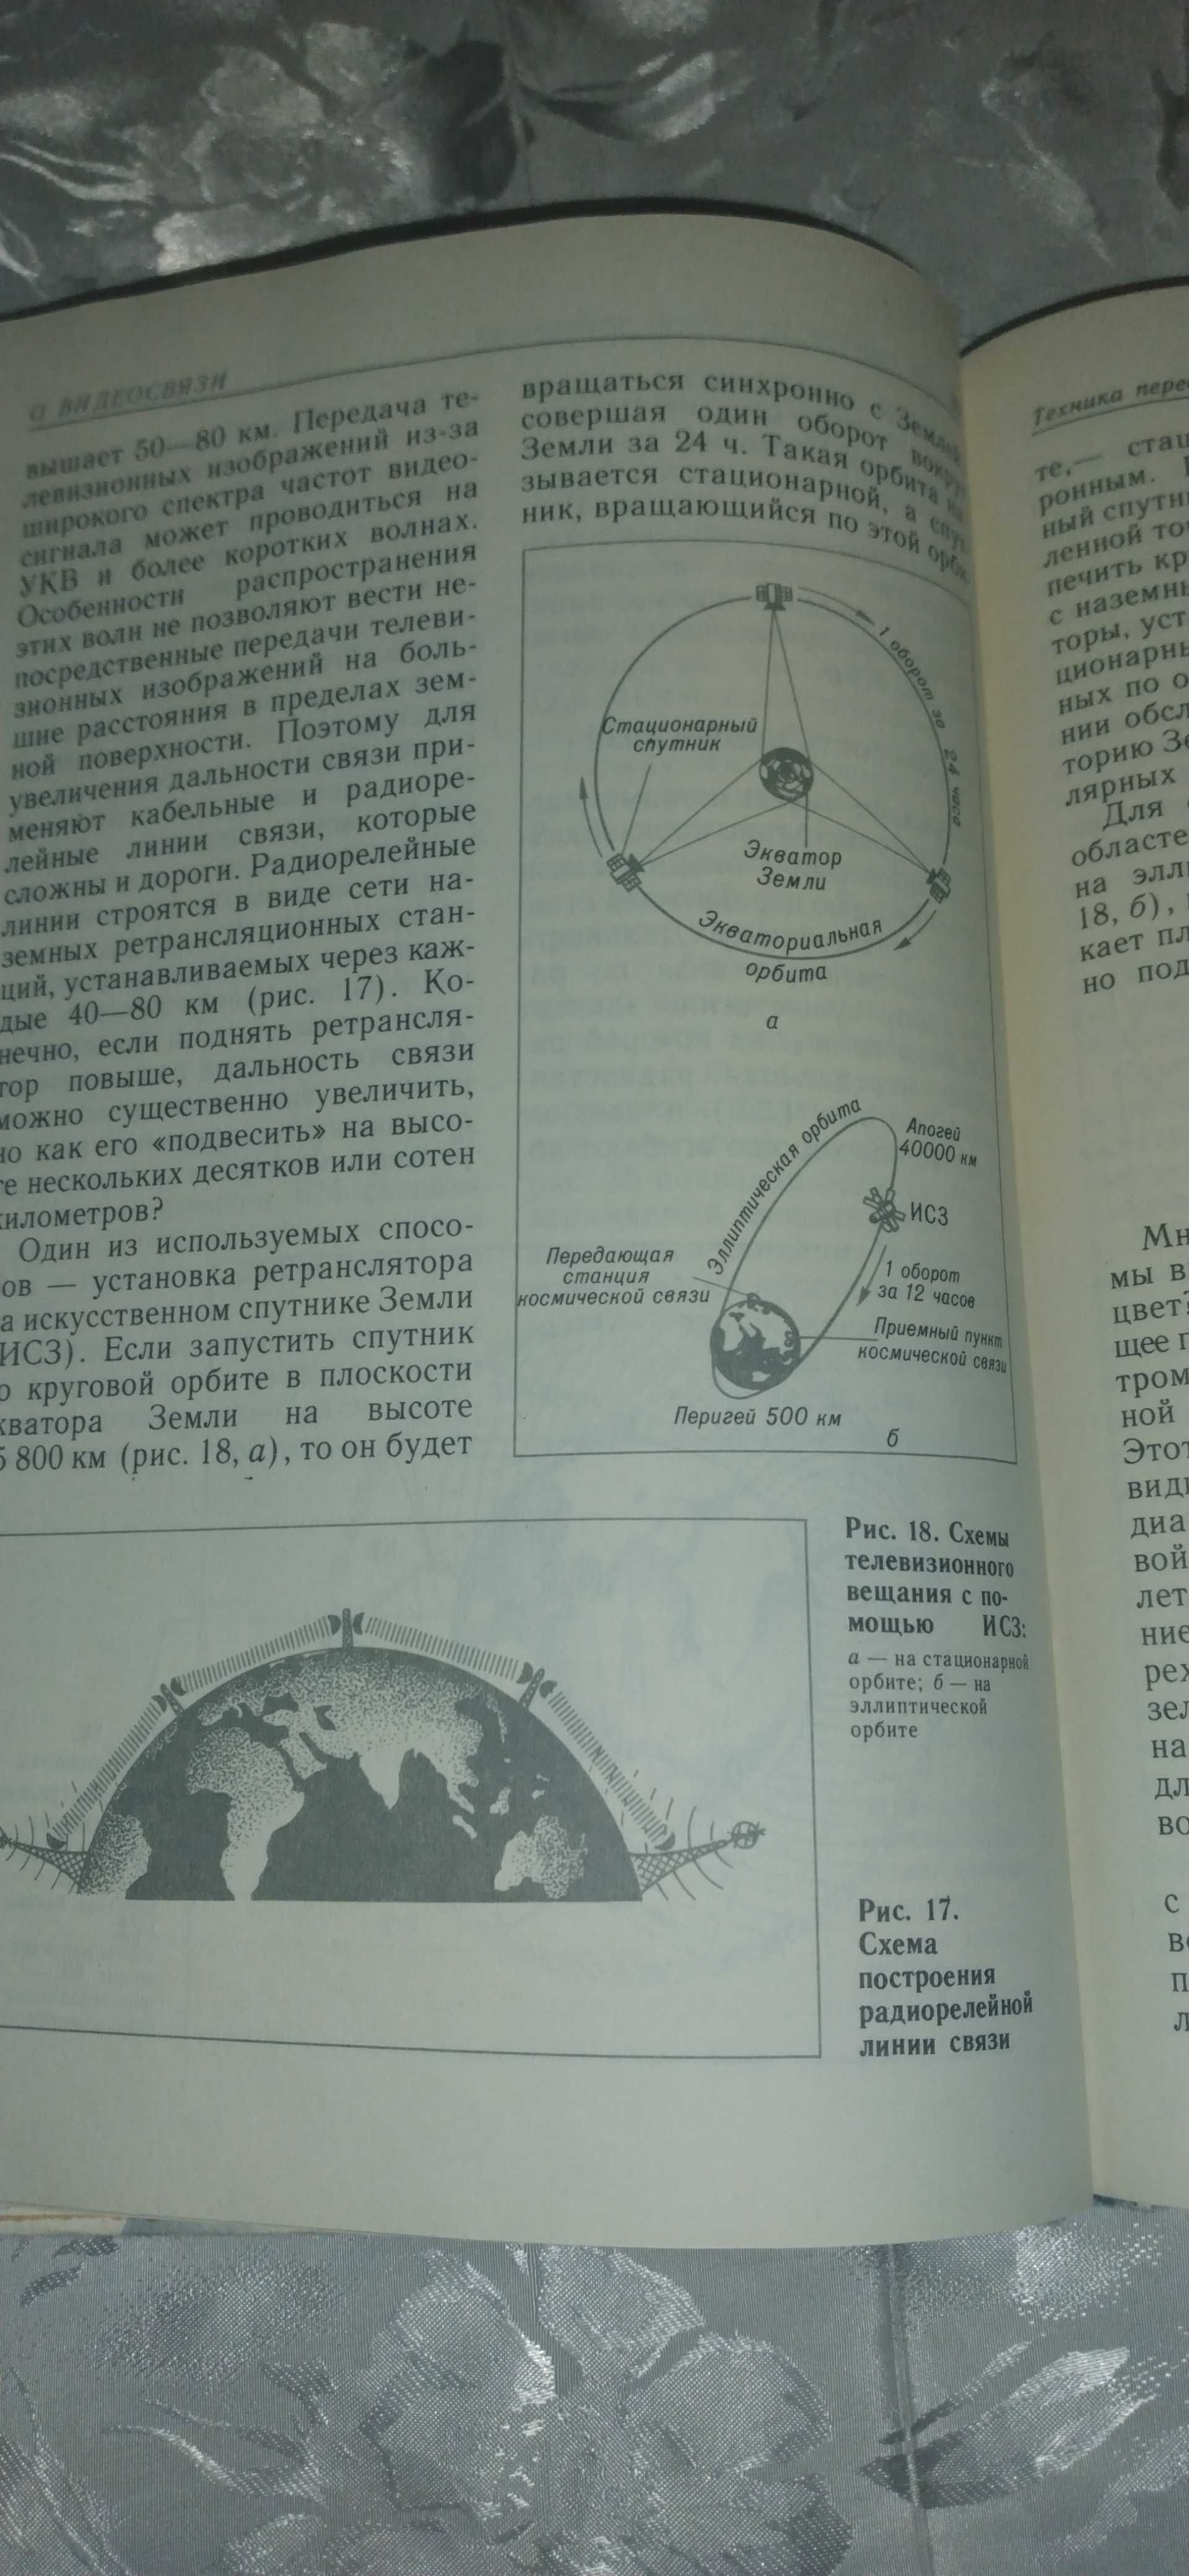 Научно-популярная издание "О видеосвязи", Киев, 1990 г.